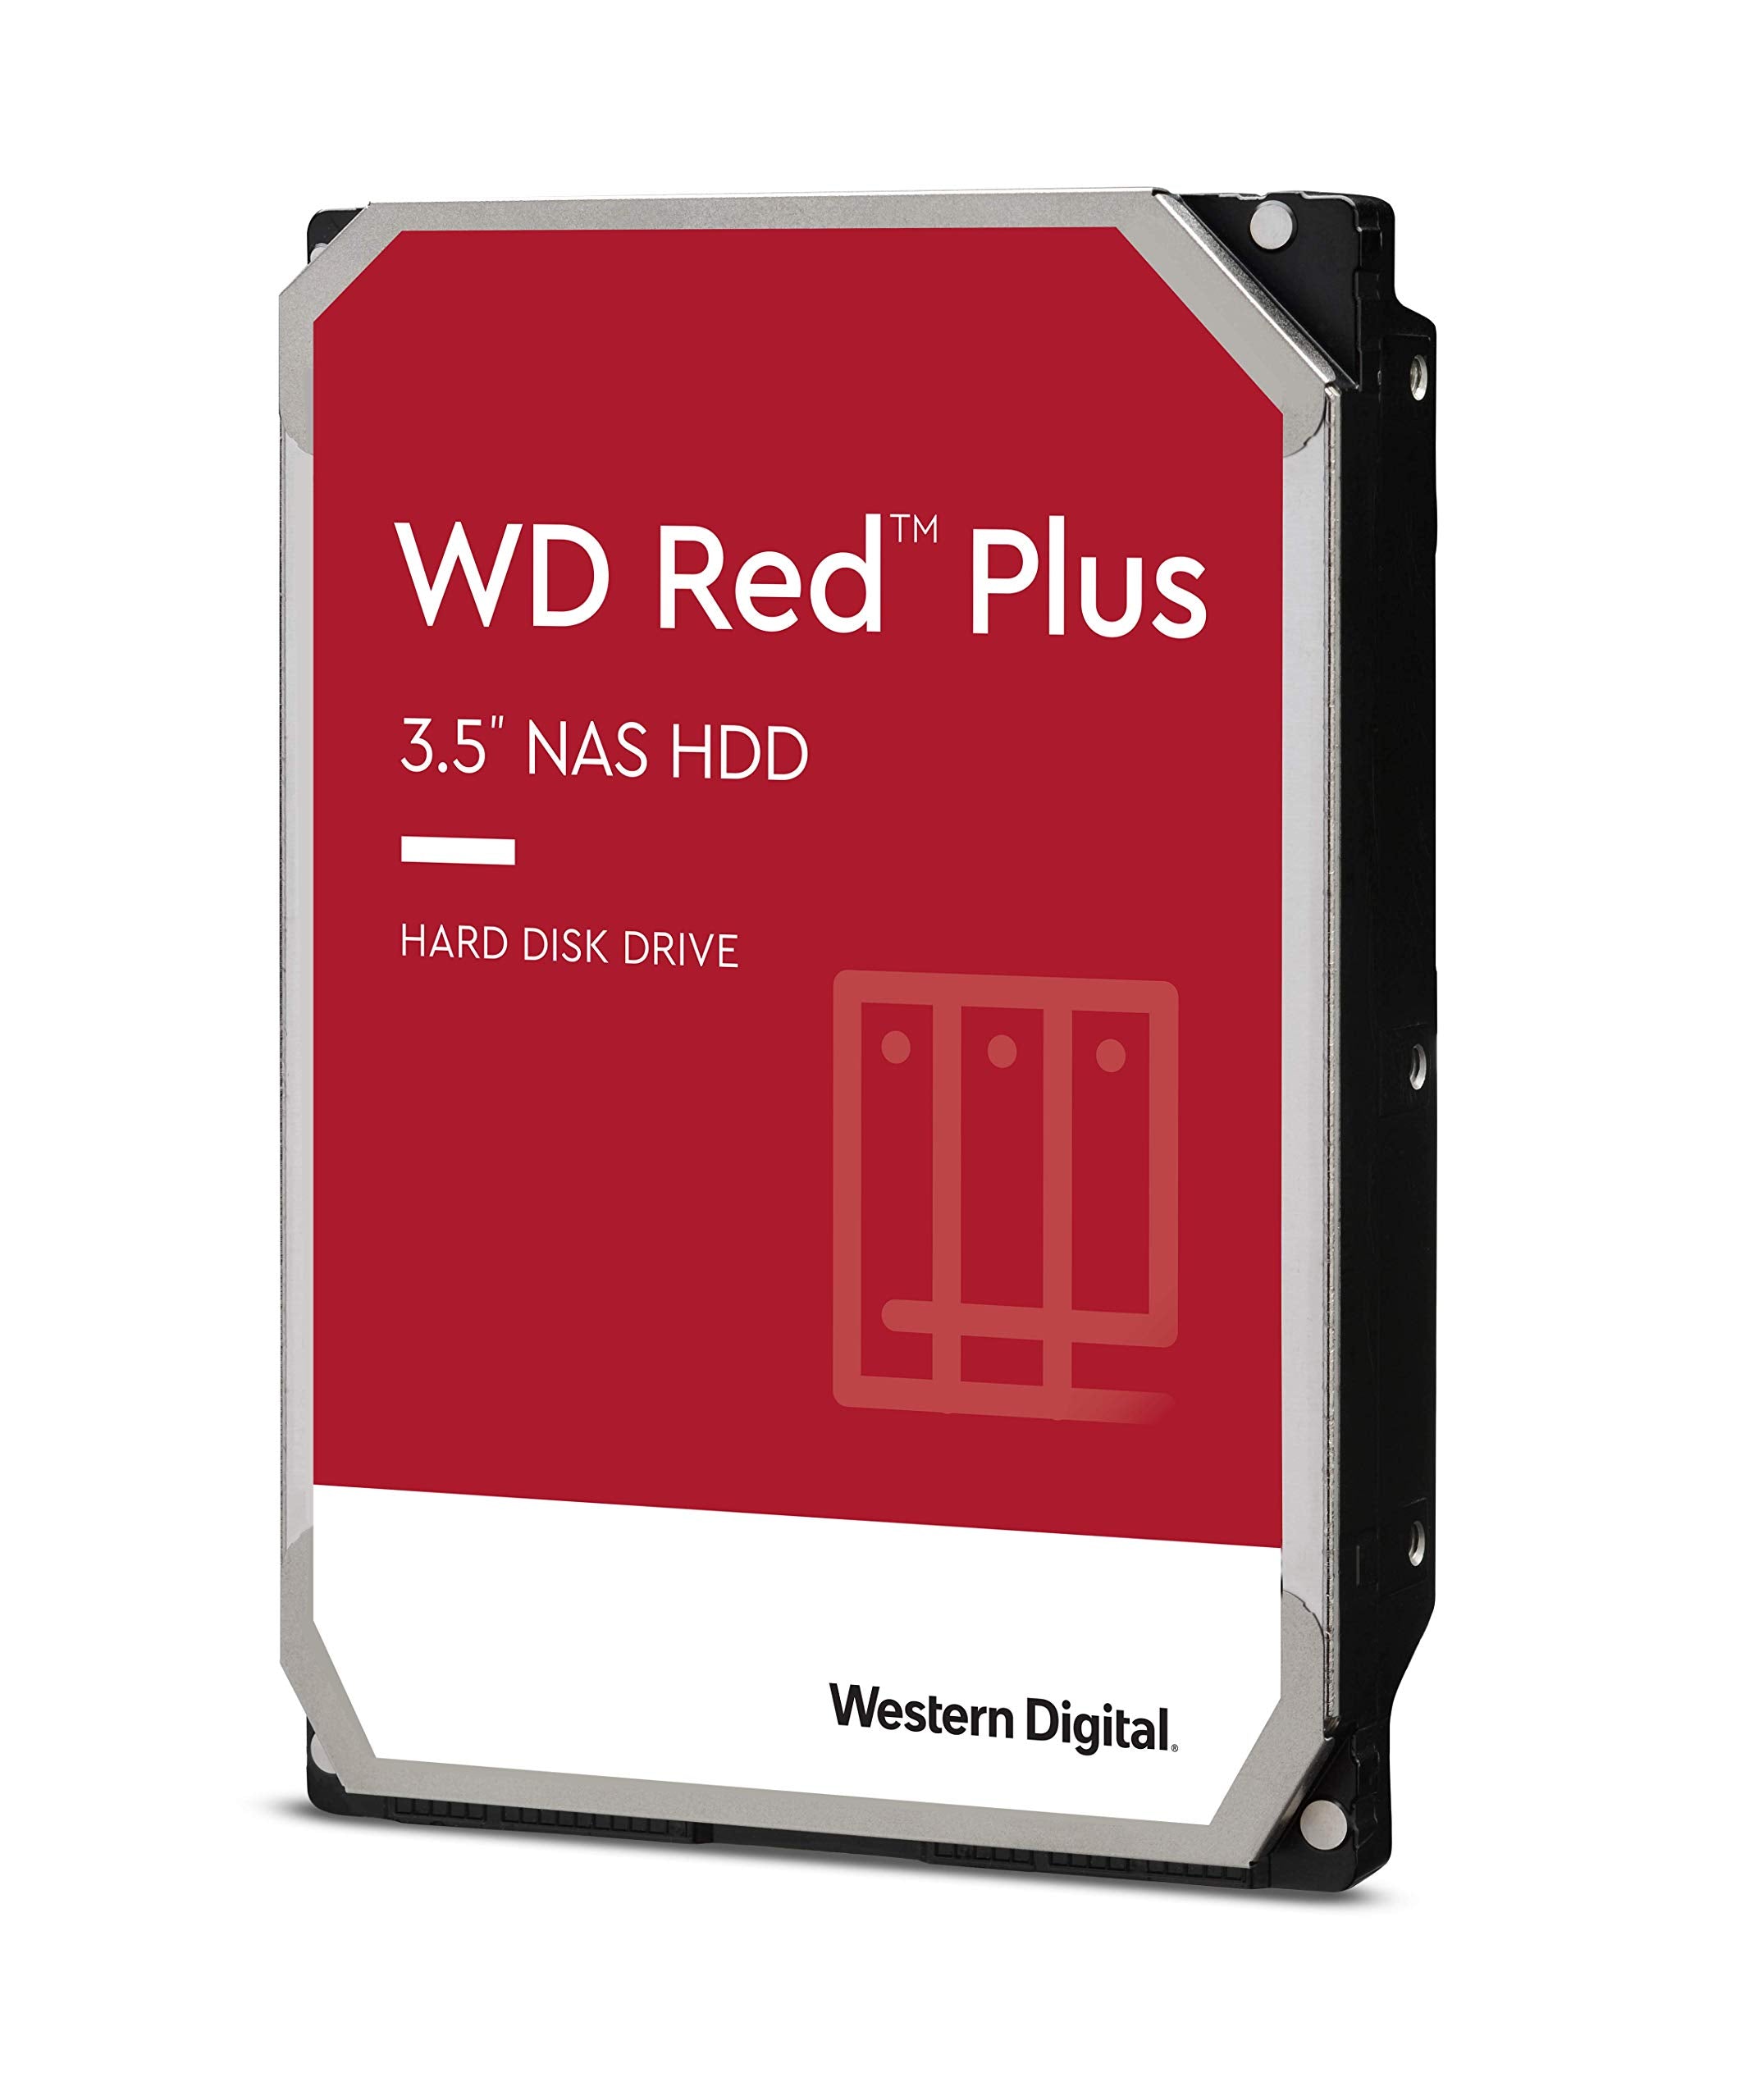 Western Digital 4TB WD Red Plus NAS Internal Hard Drive HDD - 5400 RPM, SATA 6 Gb/s, CMR, 128 MB Cache, 3.5